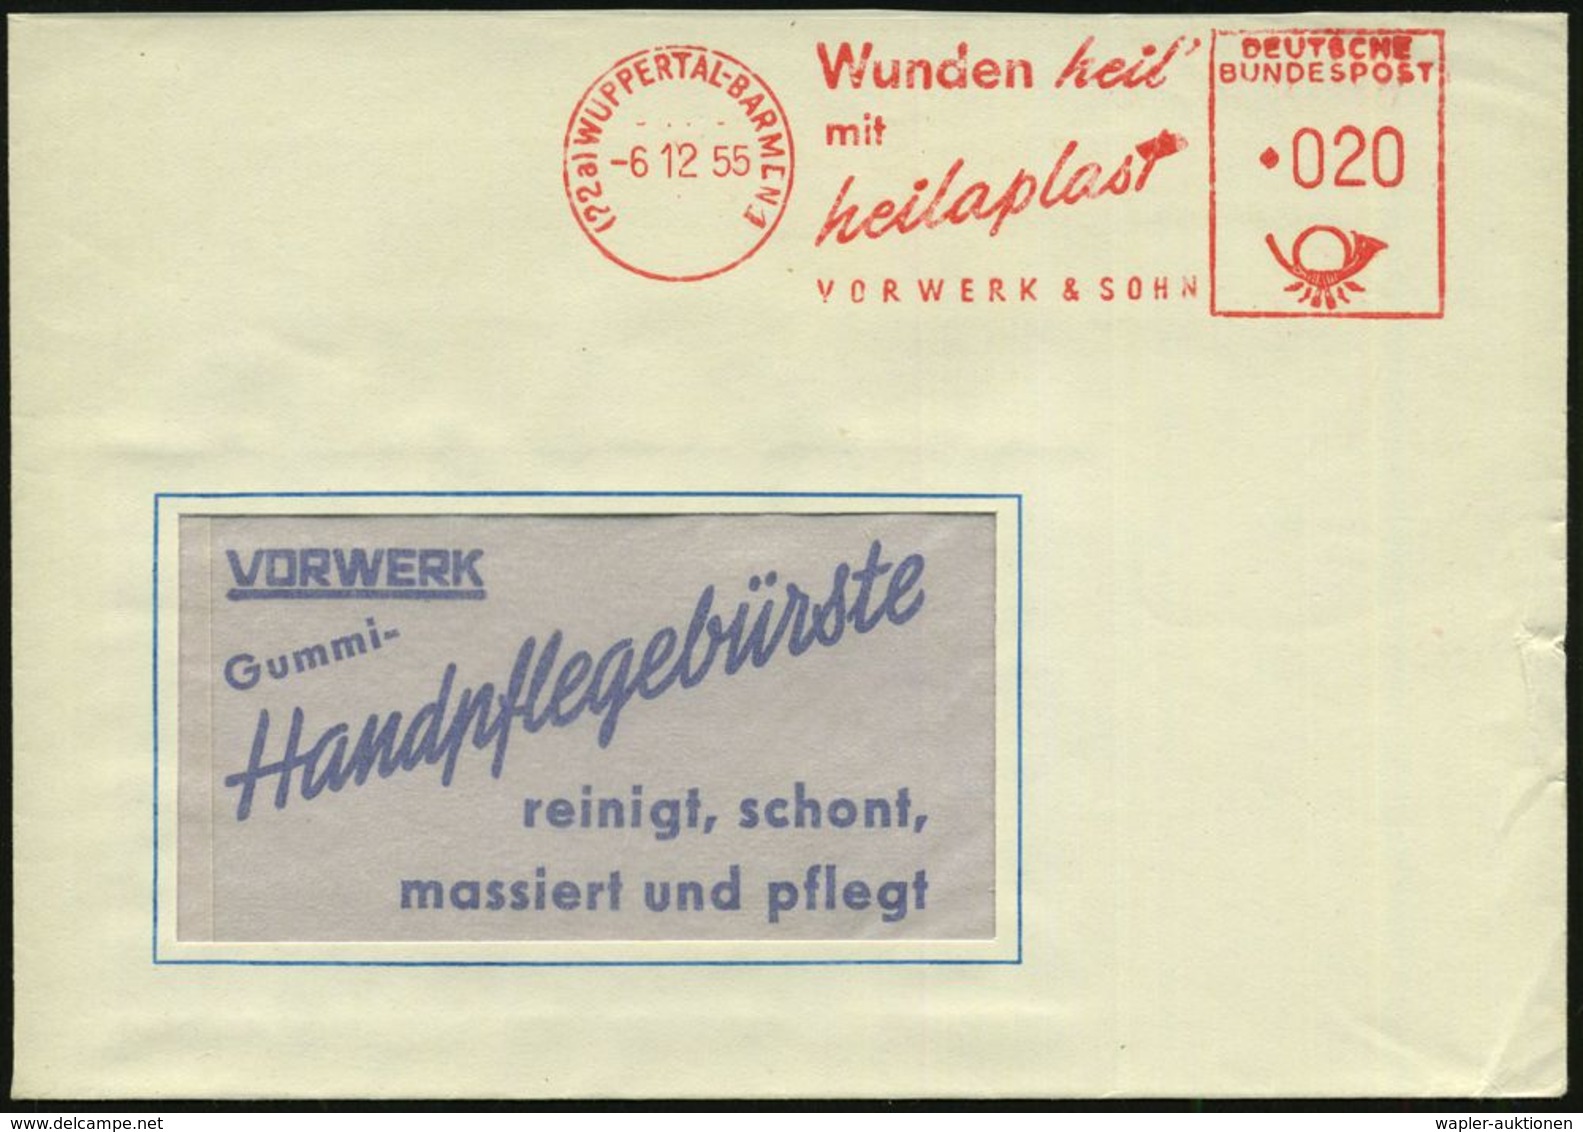 BLUT / HÄMATOLOGIE / BLUTSPENDEN : (22a) WUPPERTAL-BARMEN 1/ Wunden Heil'/ Mit/ Heilaplast/ VORWERK & SOHN 1955 (6.12.)  - Malattie